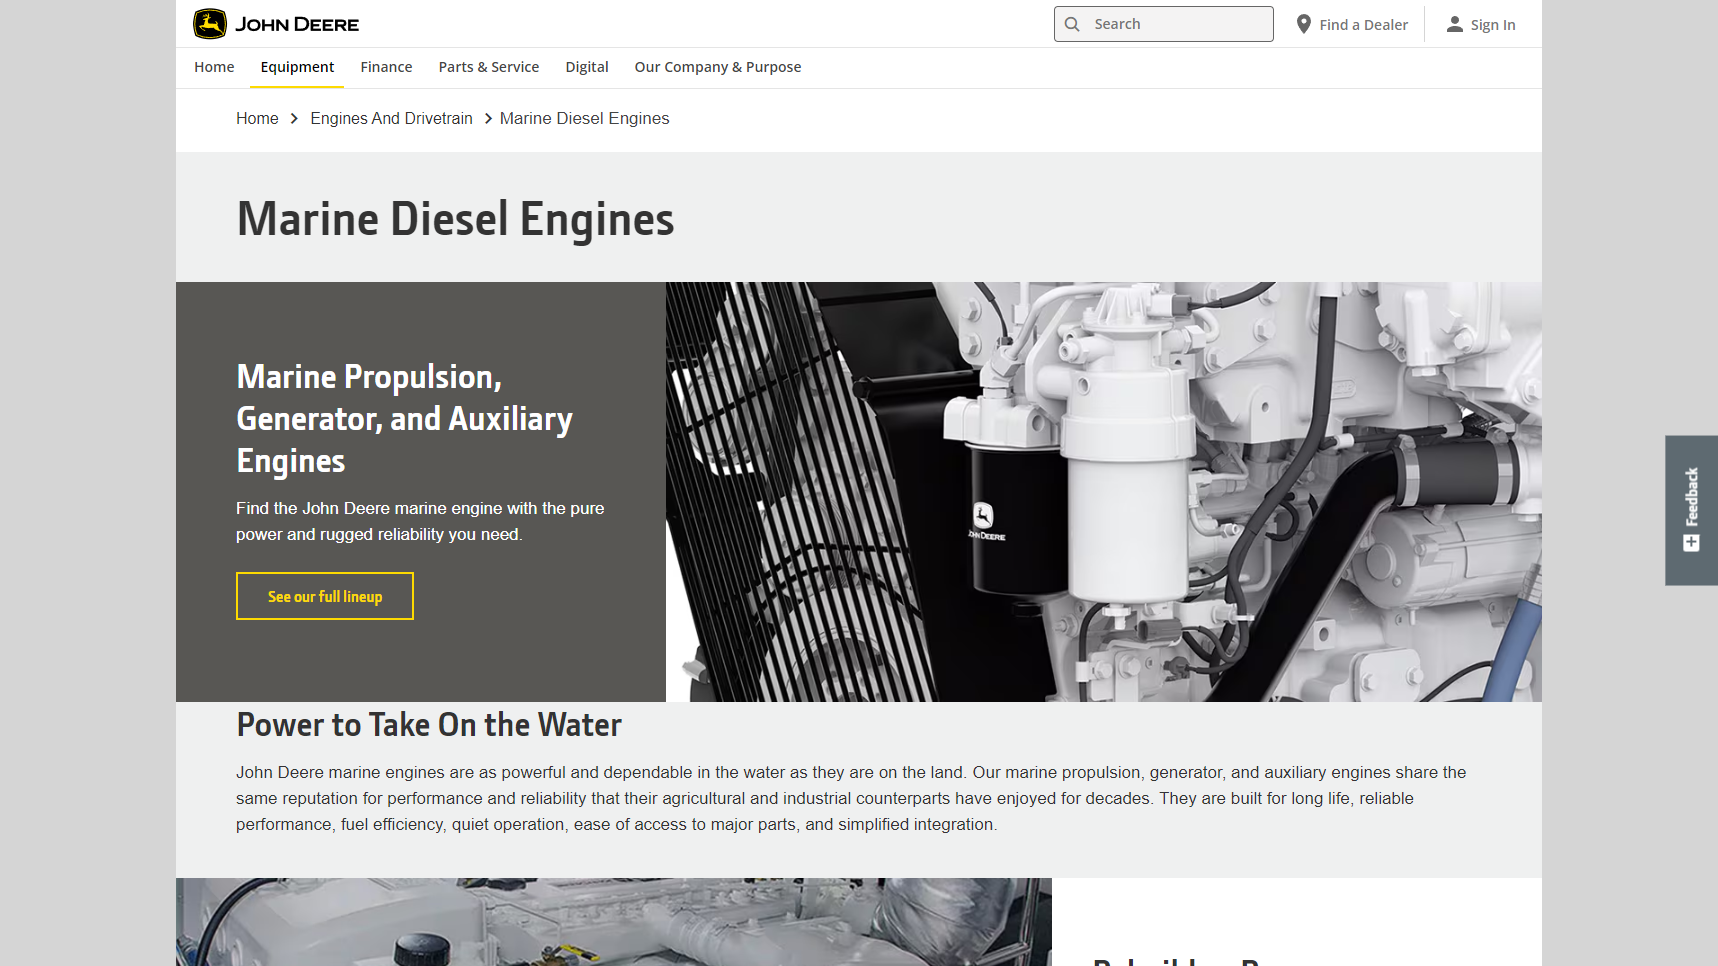 John Deere - Boat Engine Manufacturer